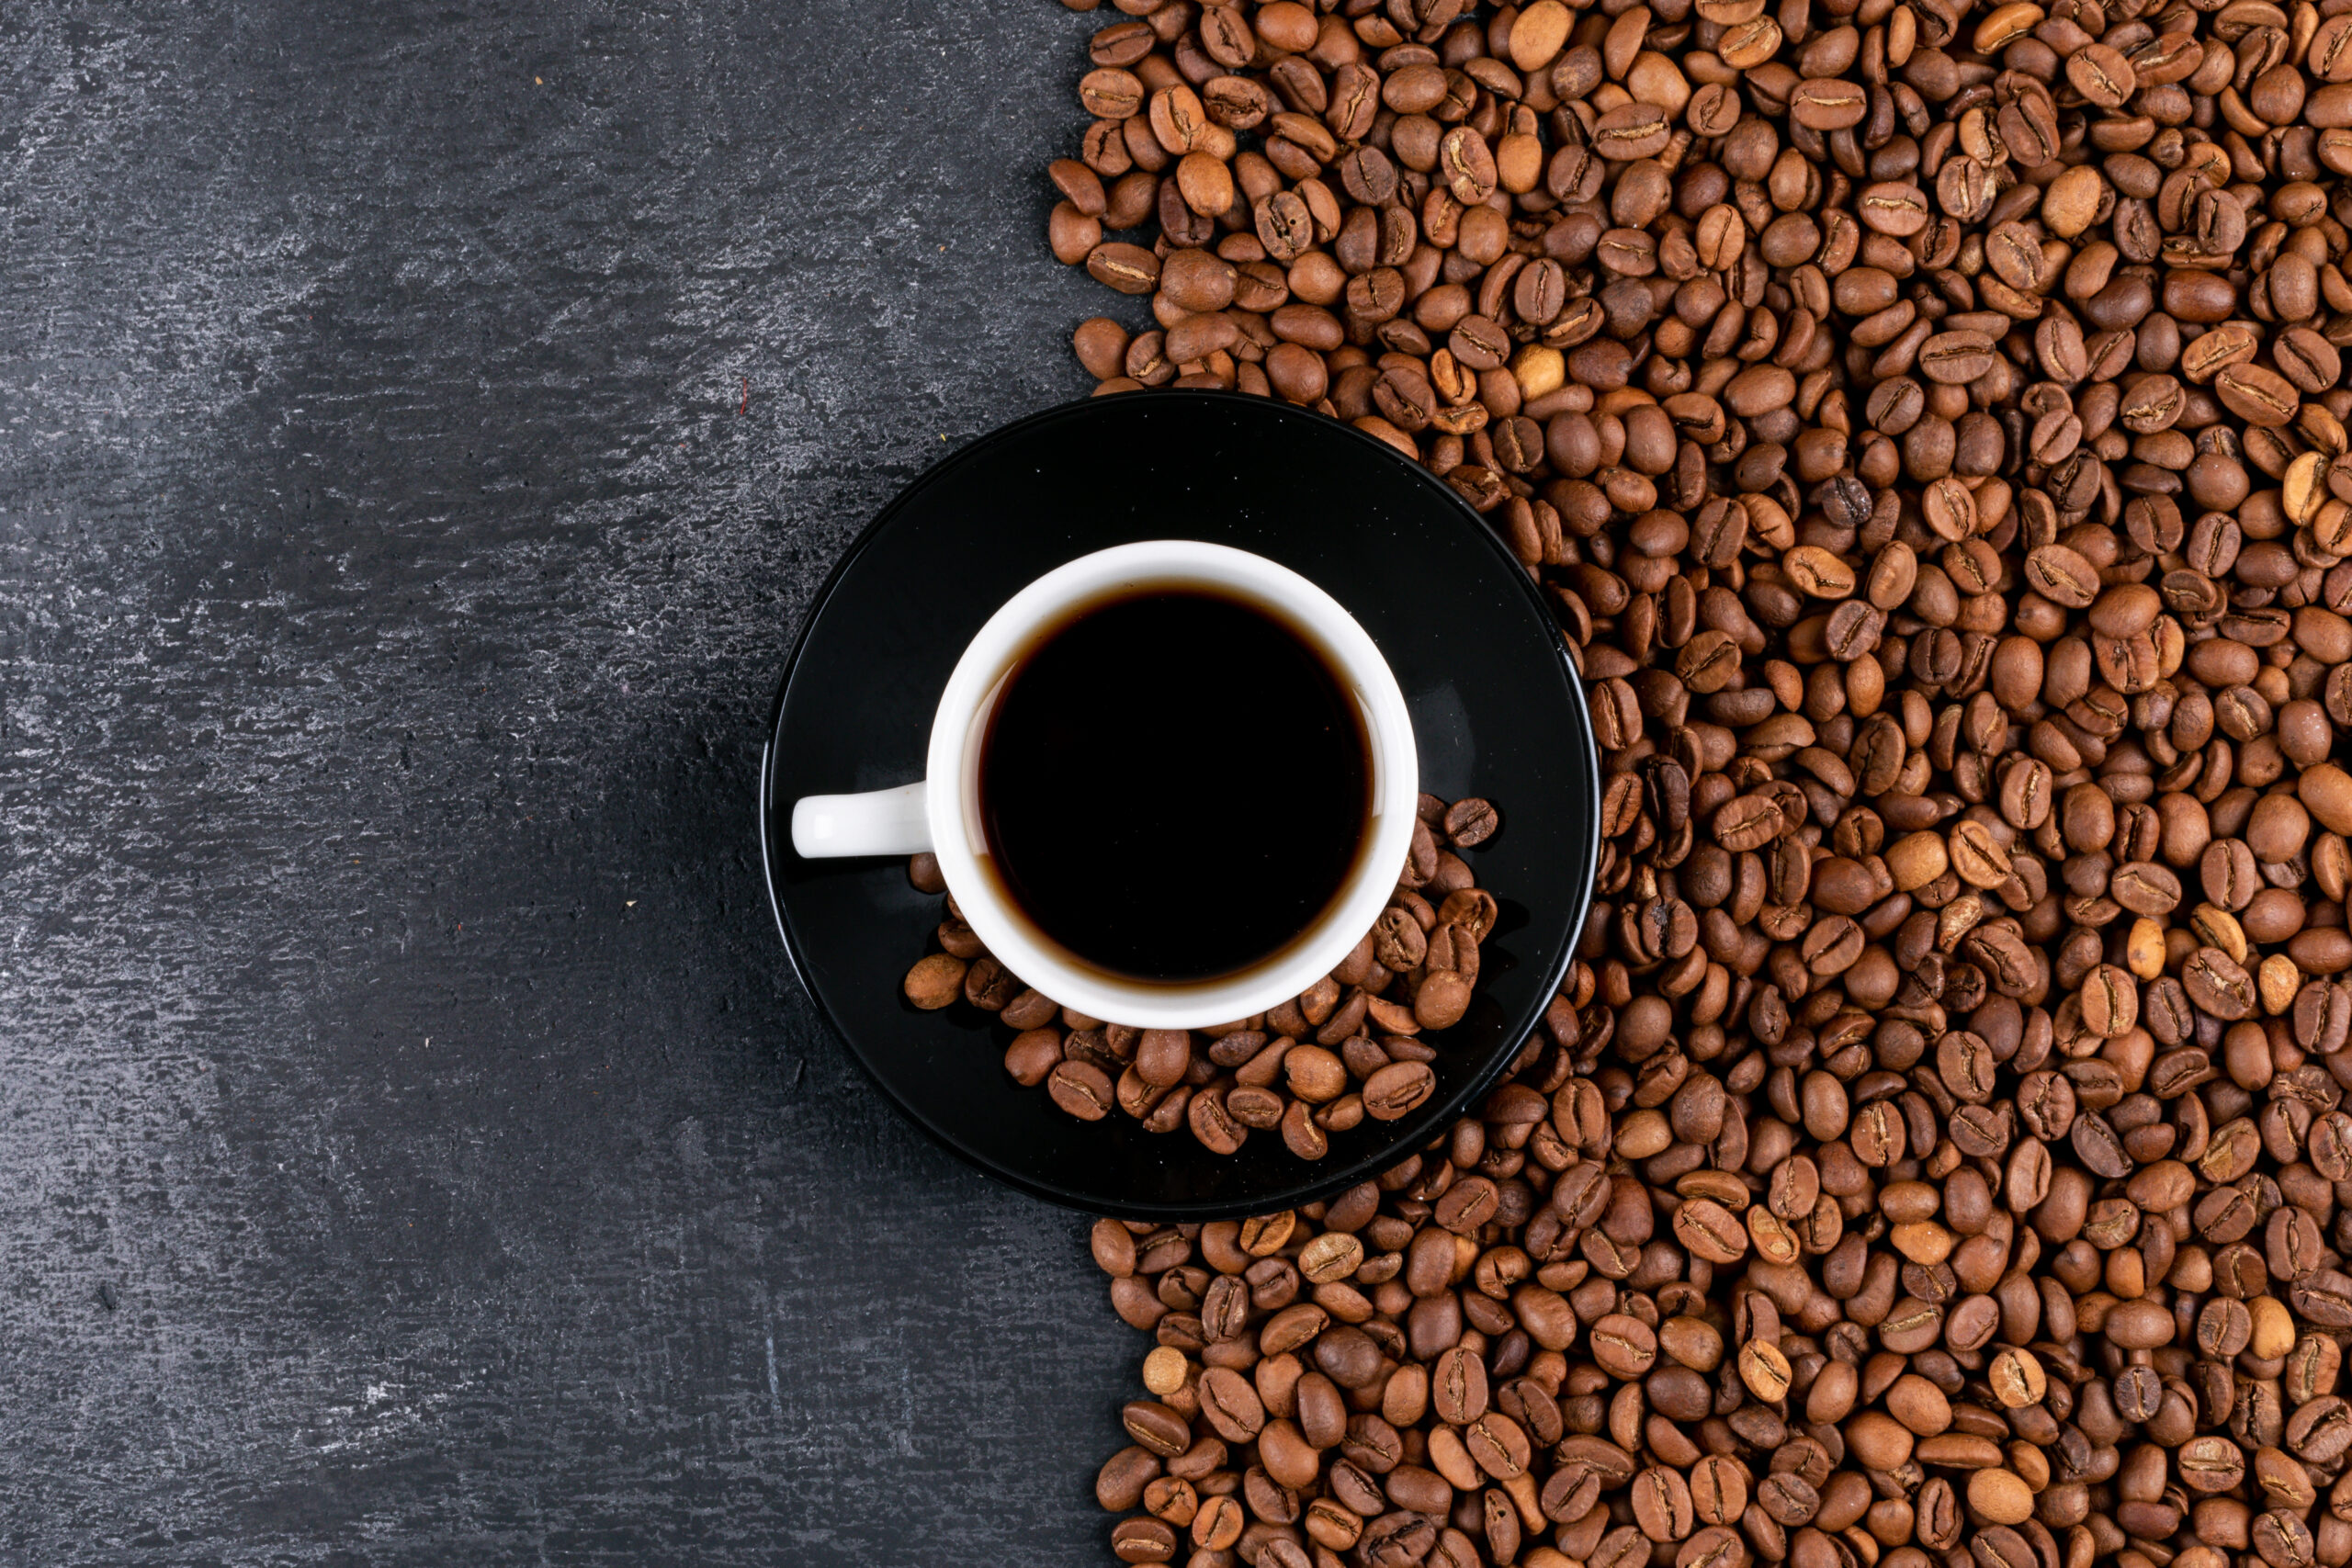 Учимся правильно выбирать кофе в зернах - Росконтроль